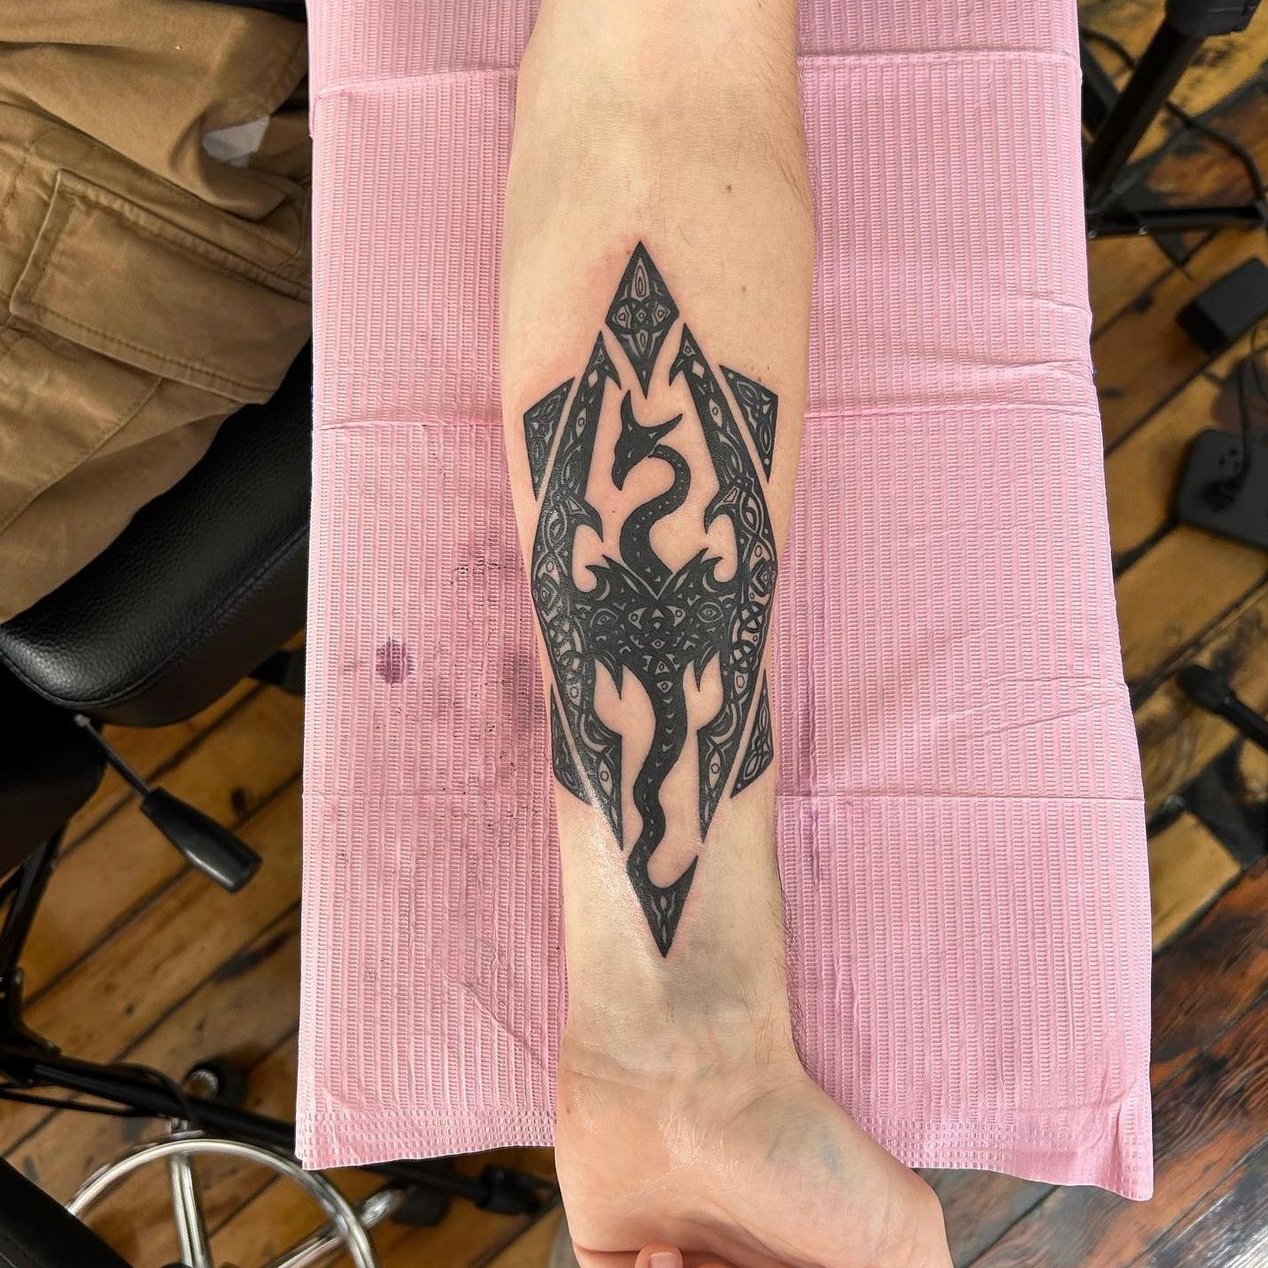 Skyrim inspired tattoo by DarknessUniverse on DeviantArt